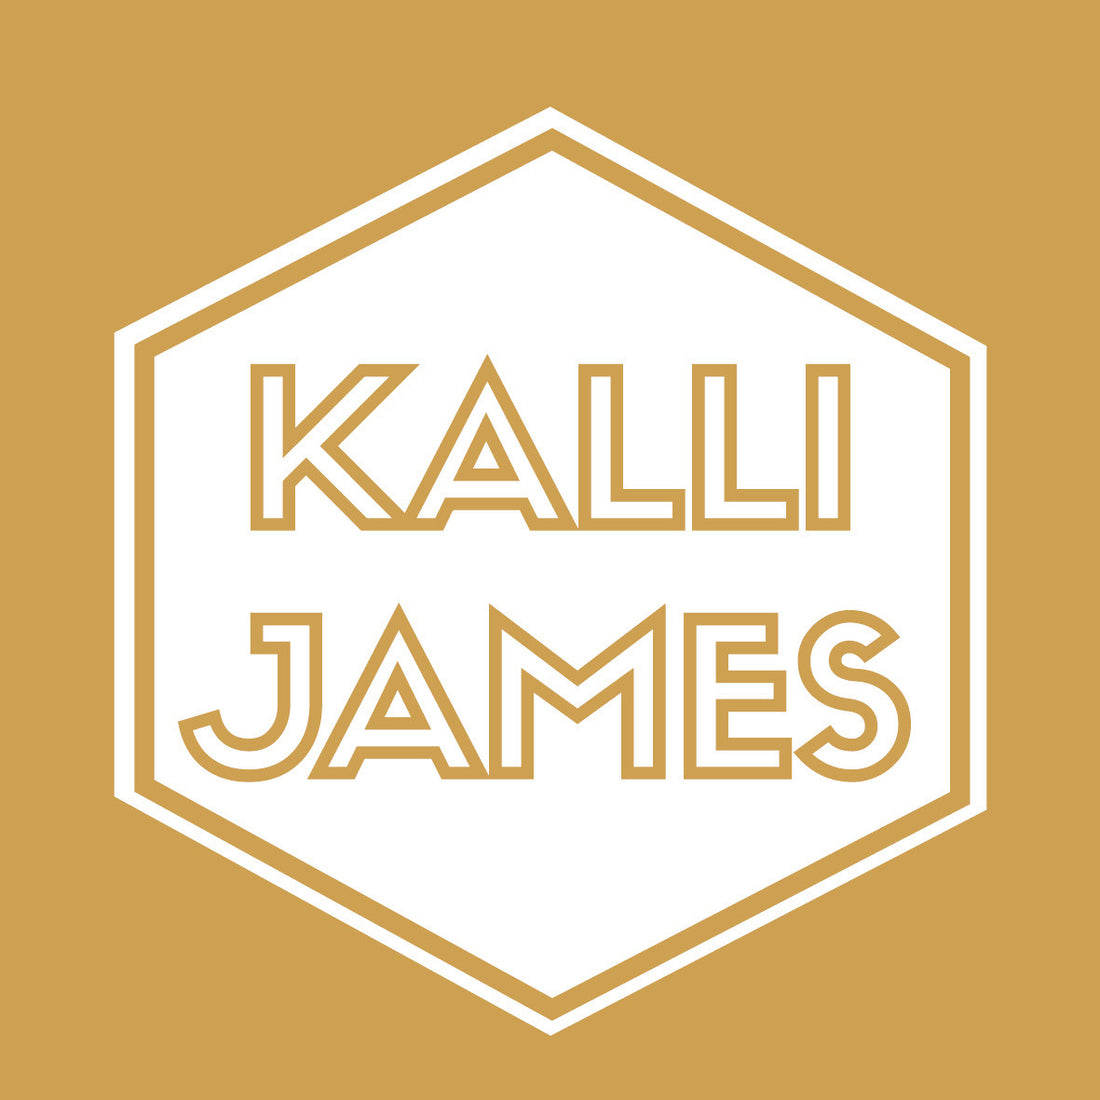 Kalli James is Launching Soon